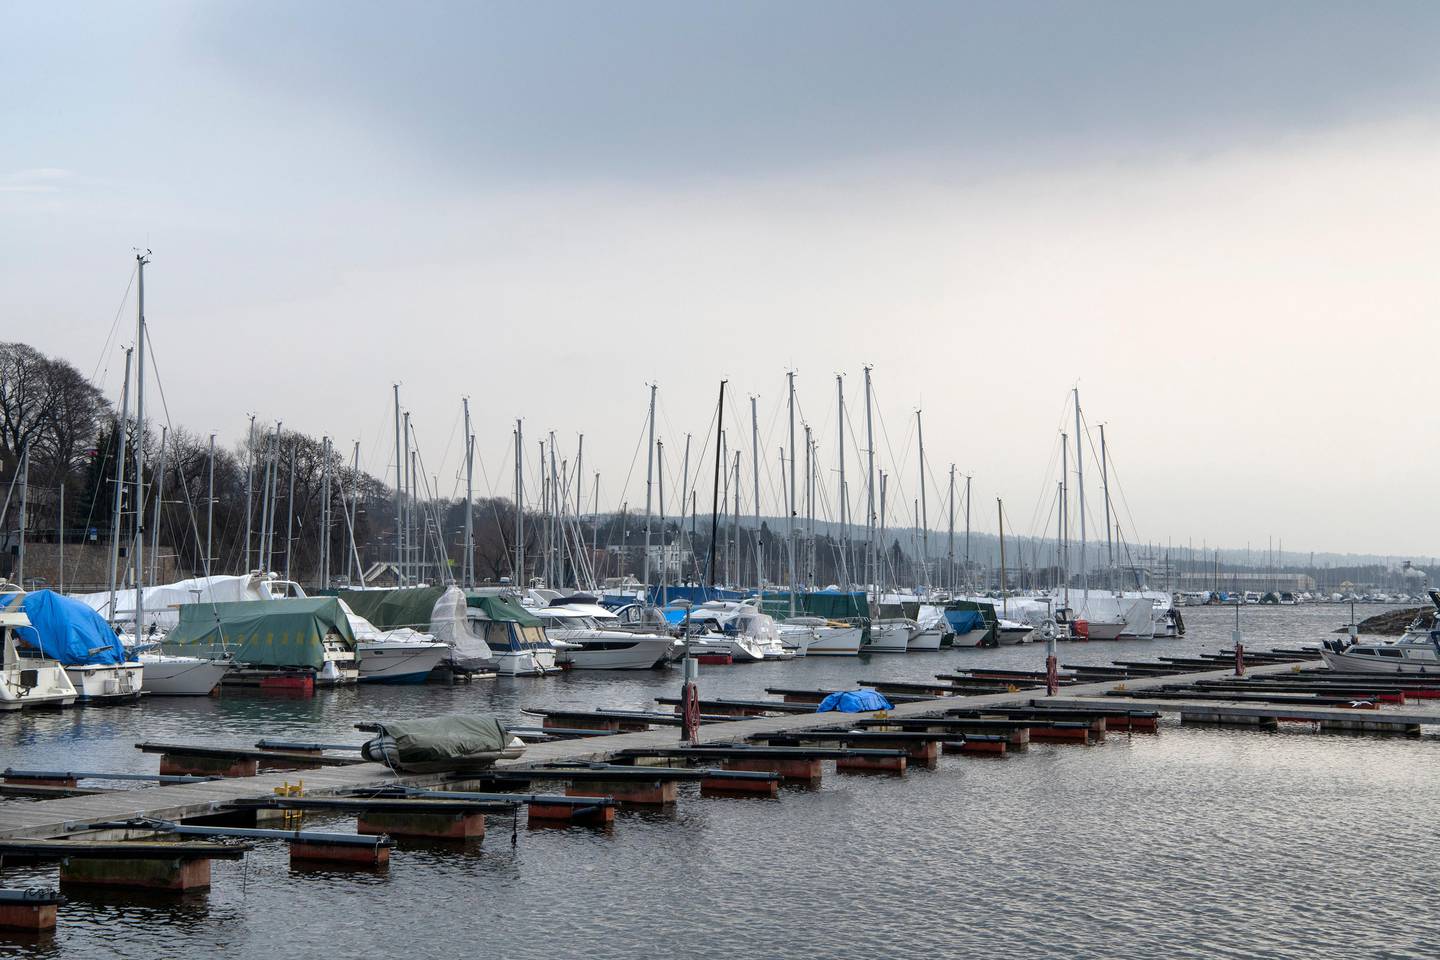 Skøyen Båtforening - Dronning Blancas vei 1
Båthavn i Oslo. Båtplasser. 